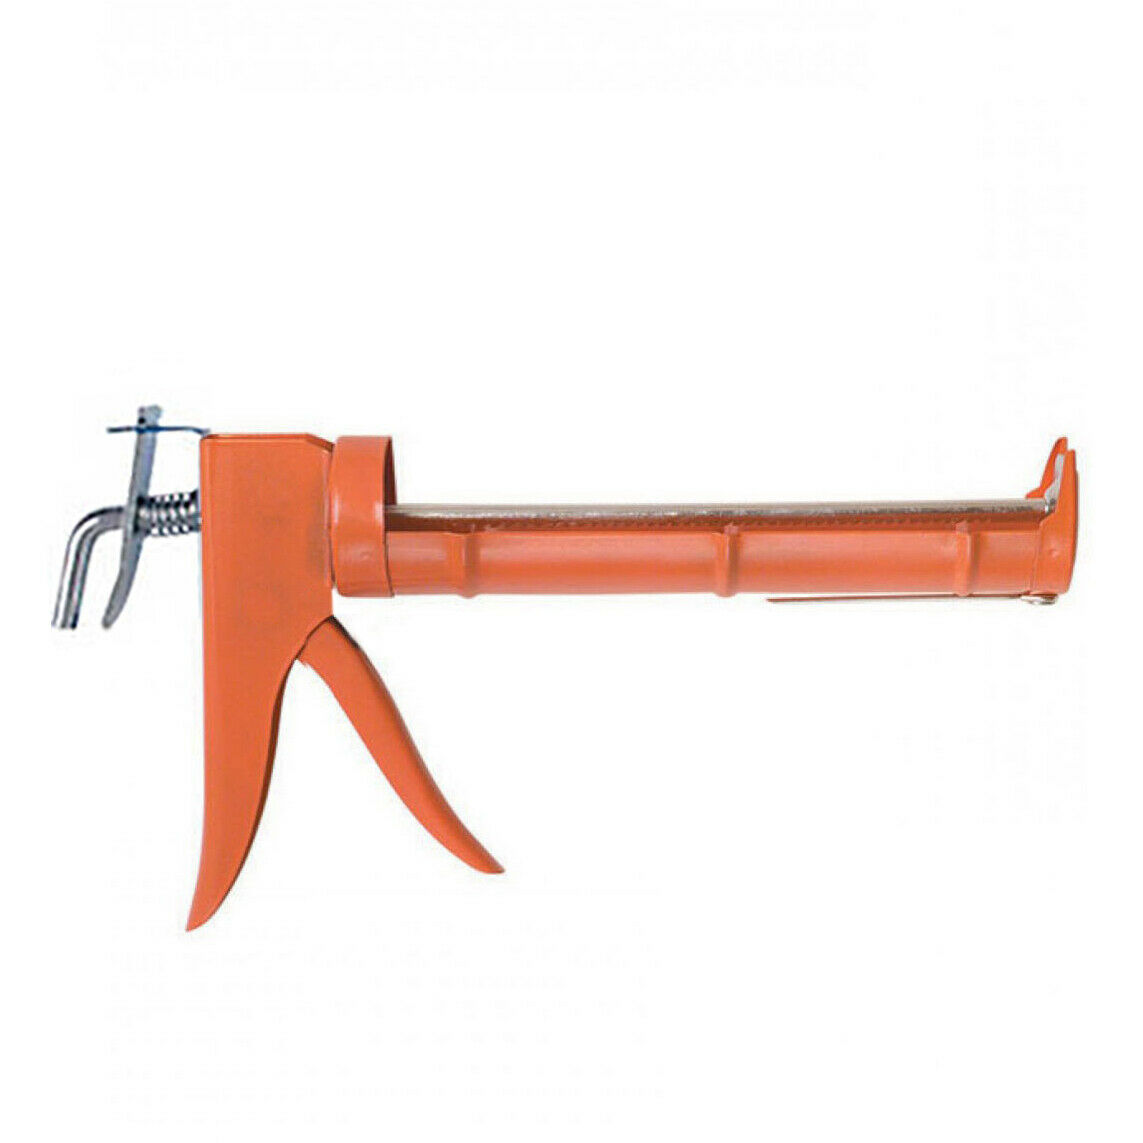 10 Oz Rod Cordless Caulk Gun Metal Hand Tool Caulking Gun Pistol Grip Orange